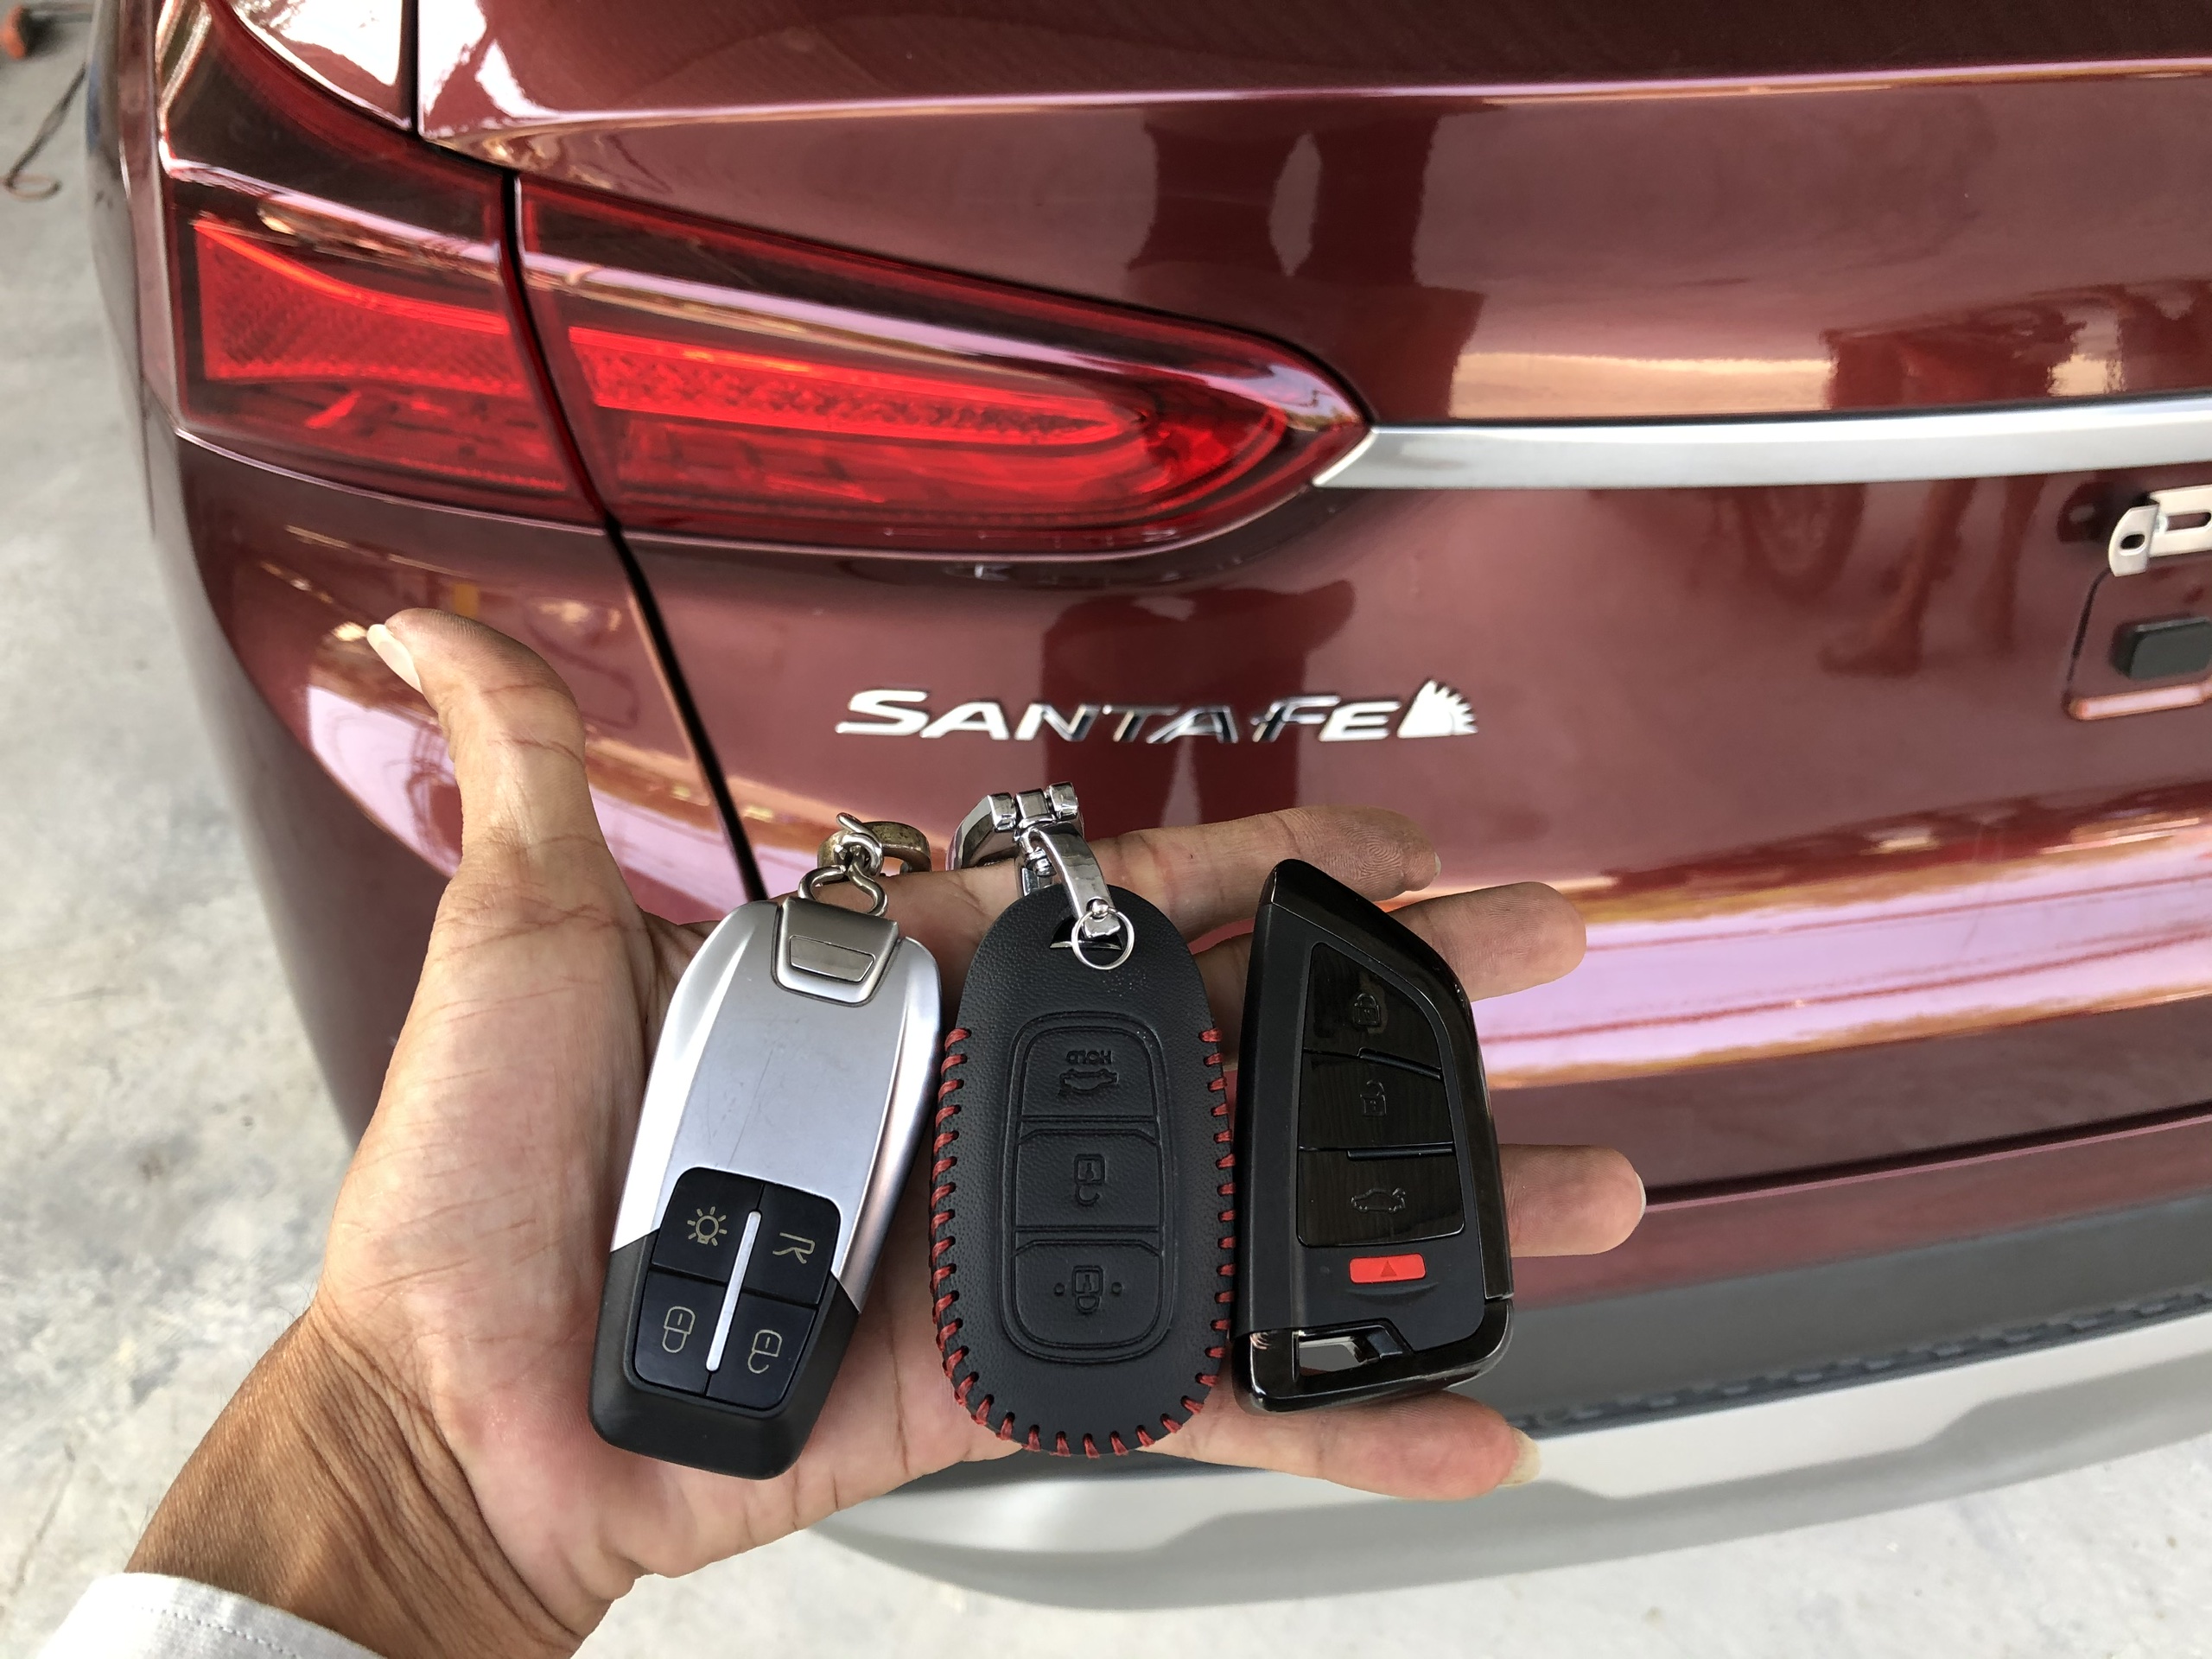 Cần cung cấp thông tin gì khi làm chìa khóa xe Hyundai SantaFe?